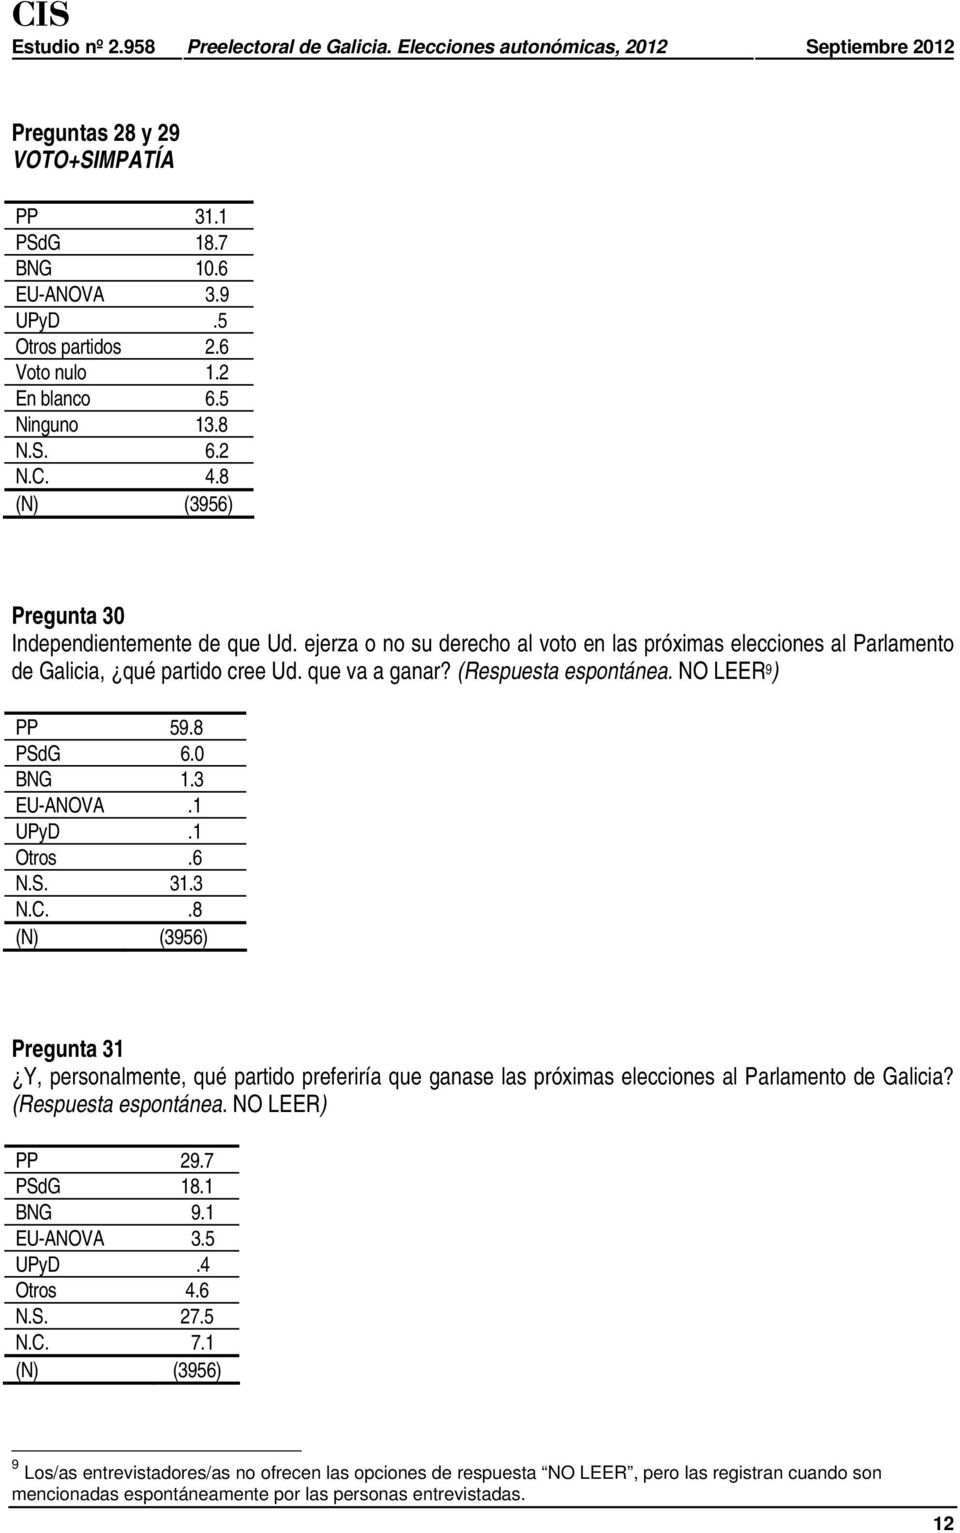 1 Otros.6 N.S. 31.3 N.C..8 Pregunta 31 Y, personalmente, qué partido preferiría que ganase las próximas elecciones al Parlamento de Galicia? (Respuesta espontánea. NO LEER) PP 29.7 PSdG 18.1 BNG 9.